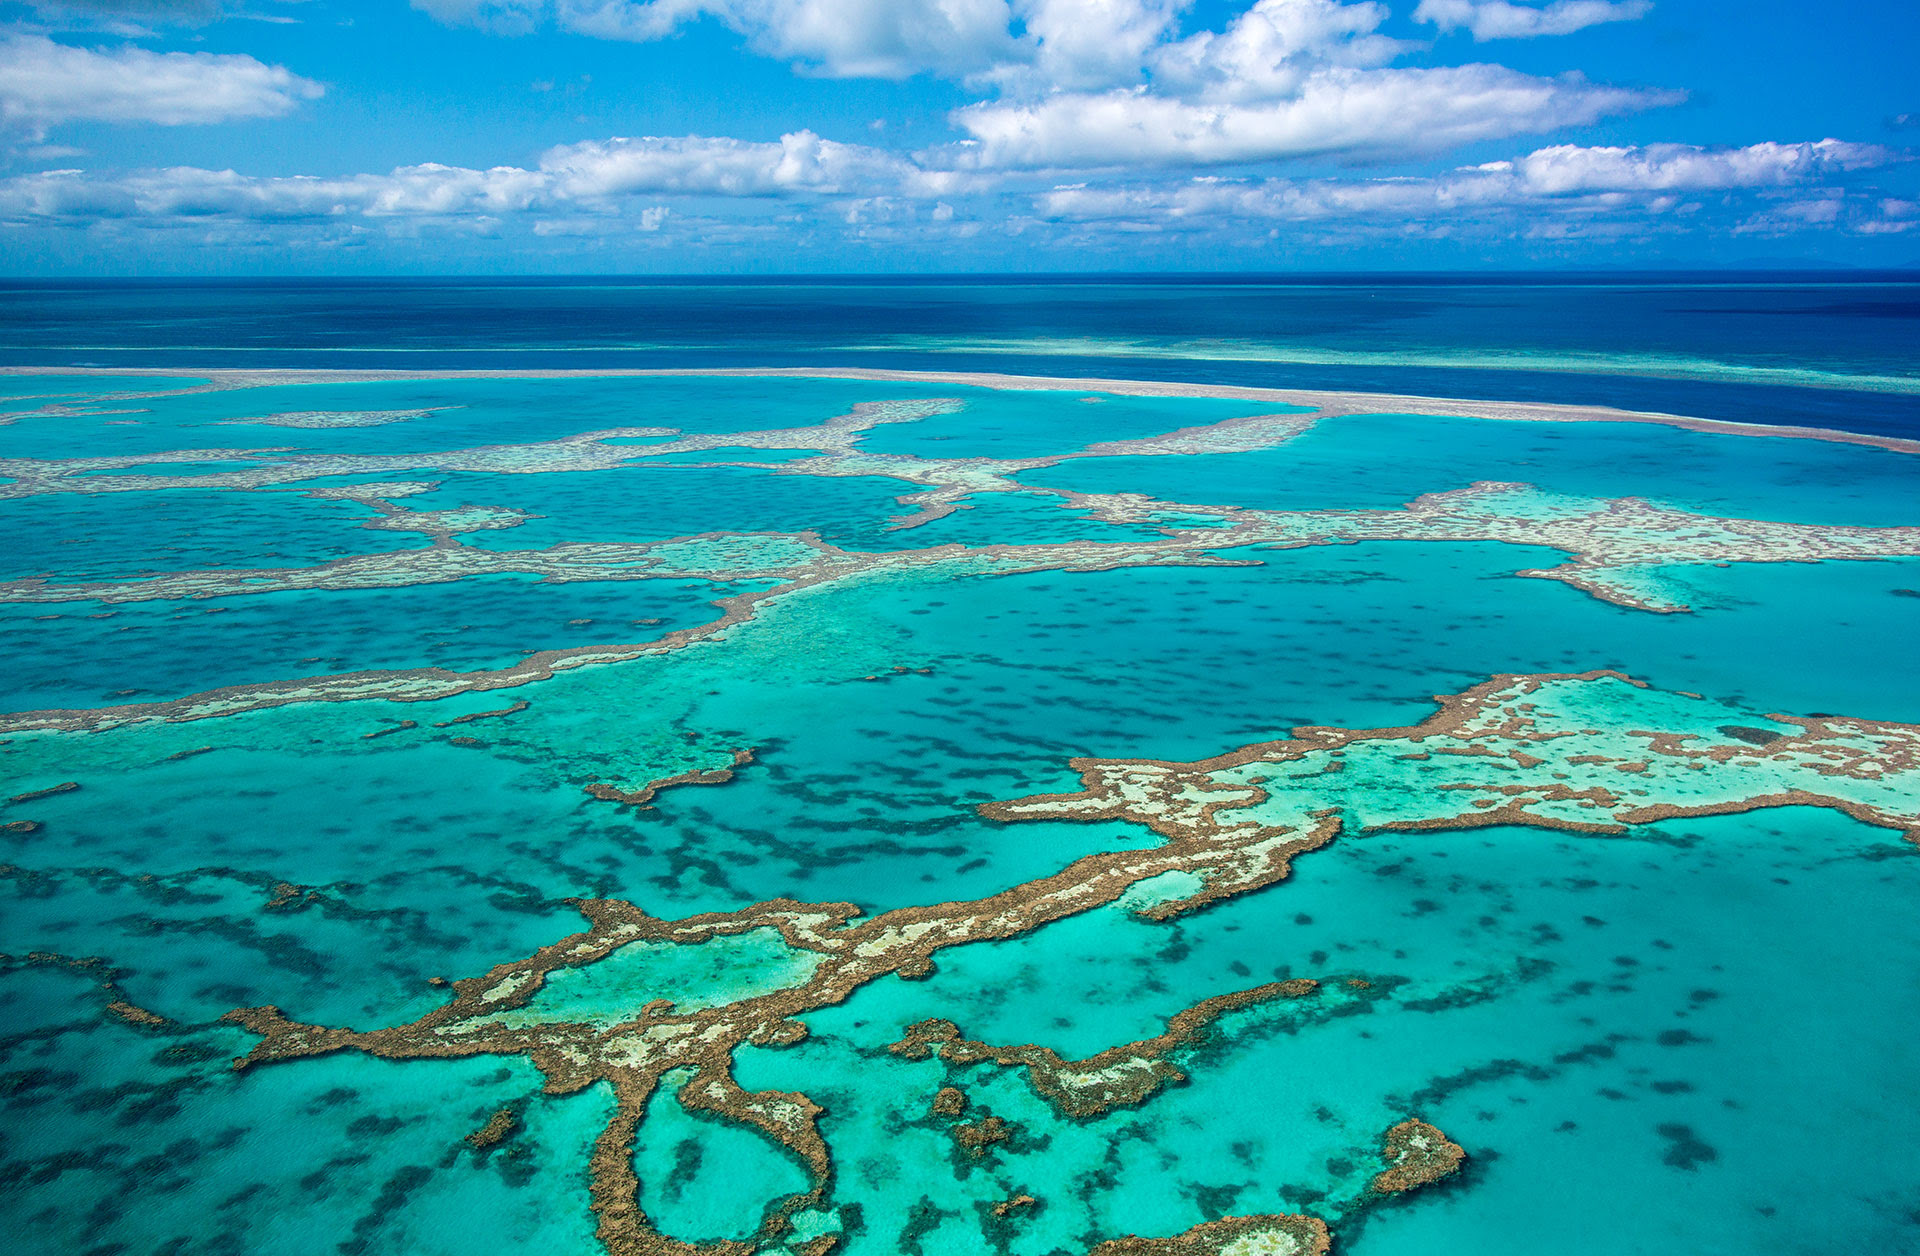 La Gran Barrera de Arrecifes situada en el noreste australiano es considerada el mayor sistema coralino del mundo (Getty Images)